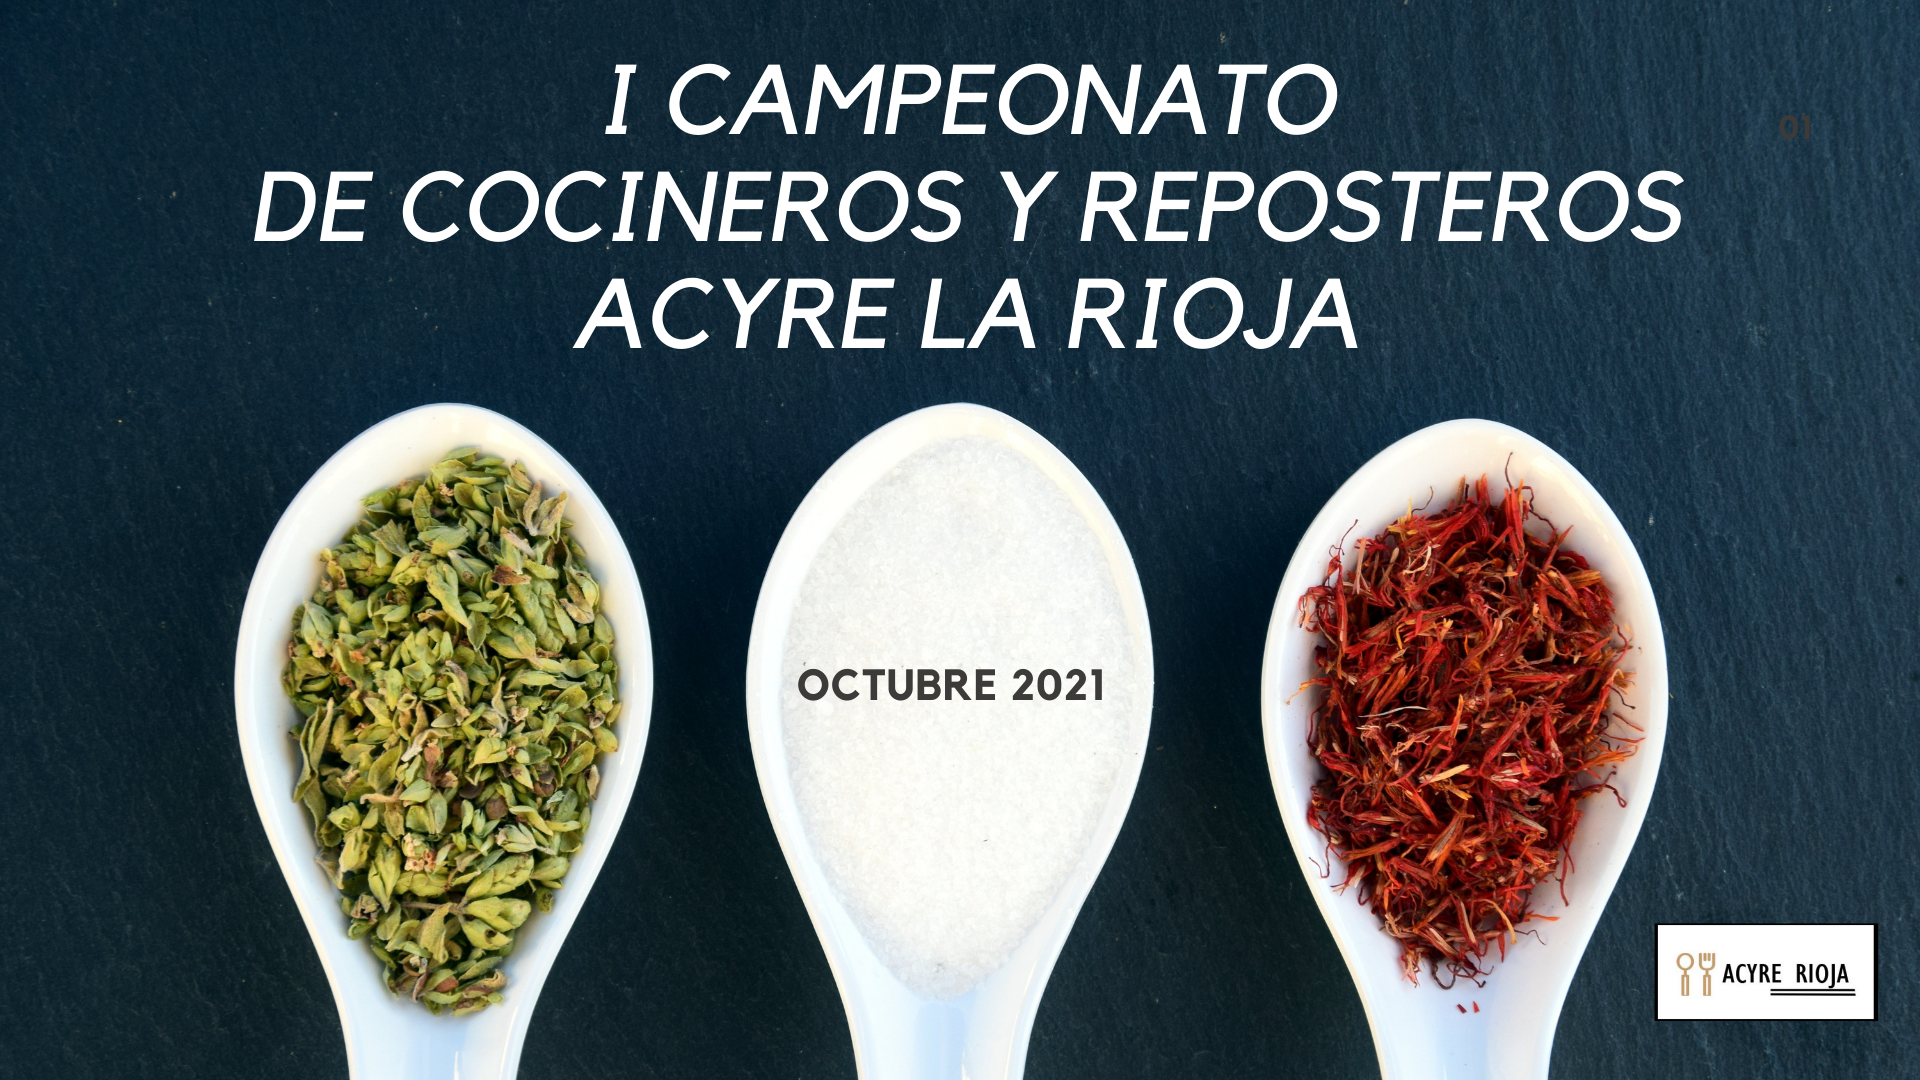 I Campeonato de Cocineros y Reposteros de La Rioja